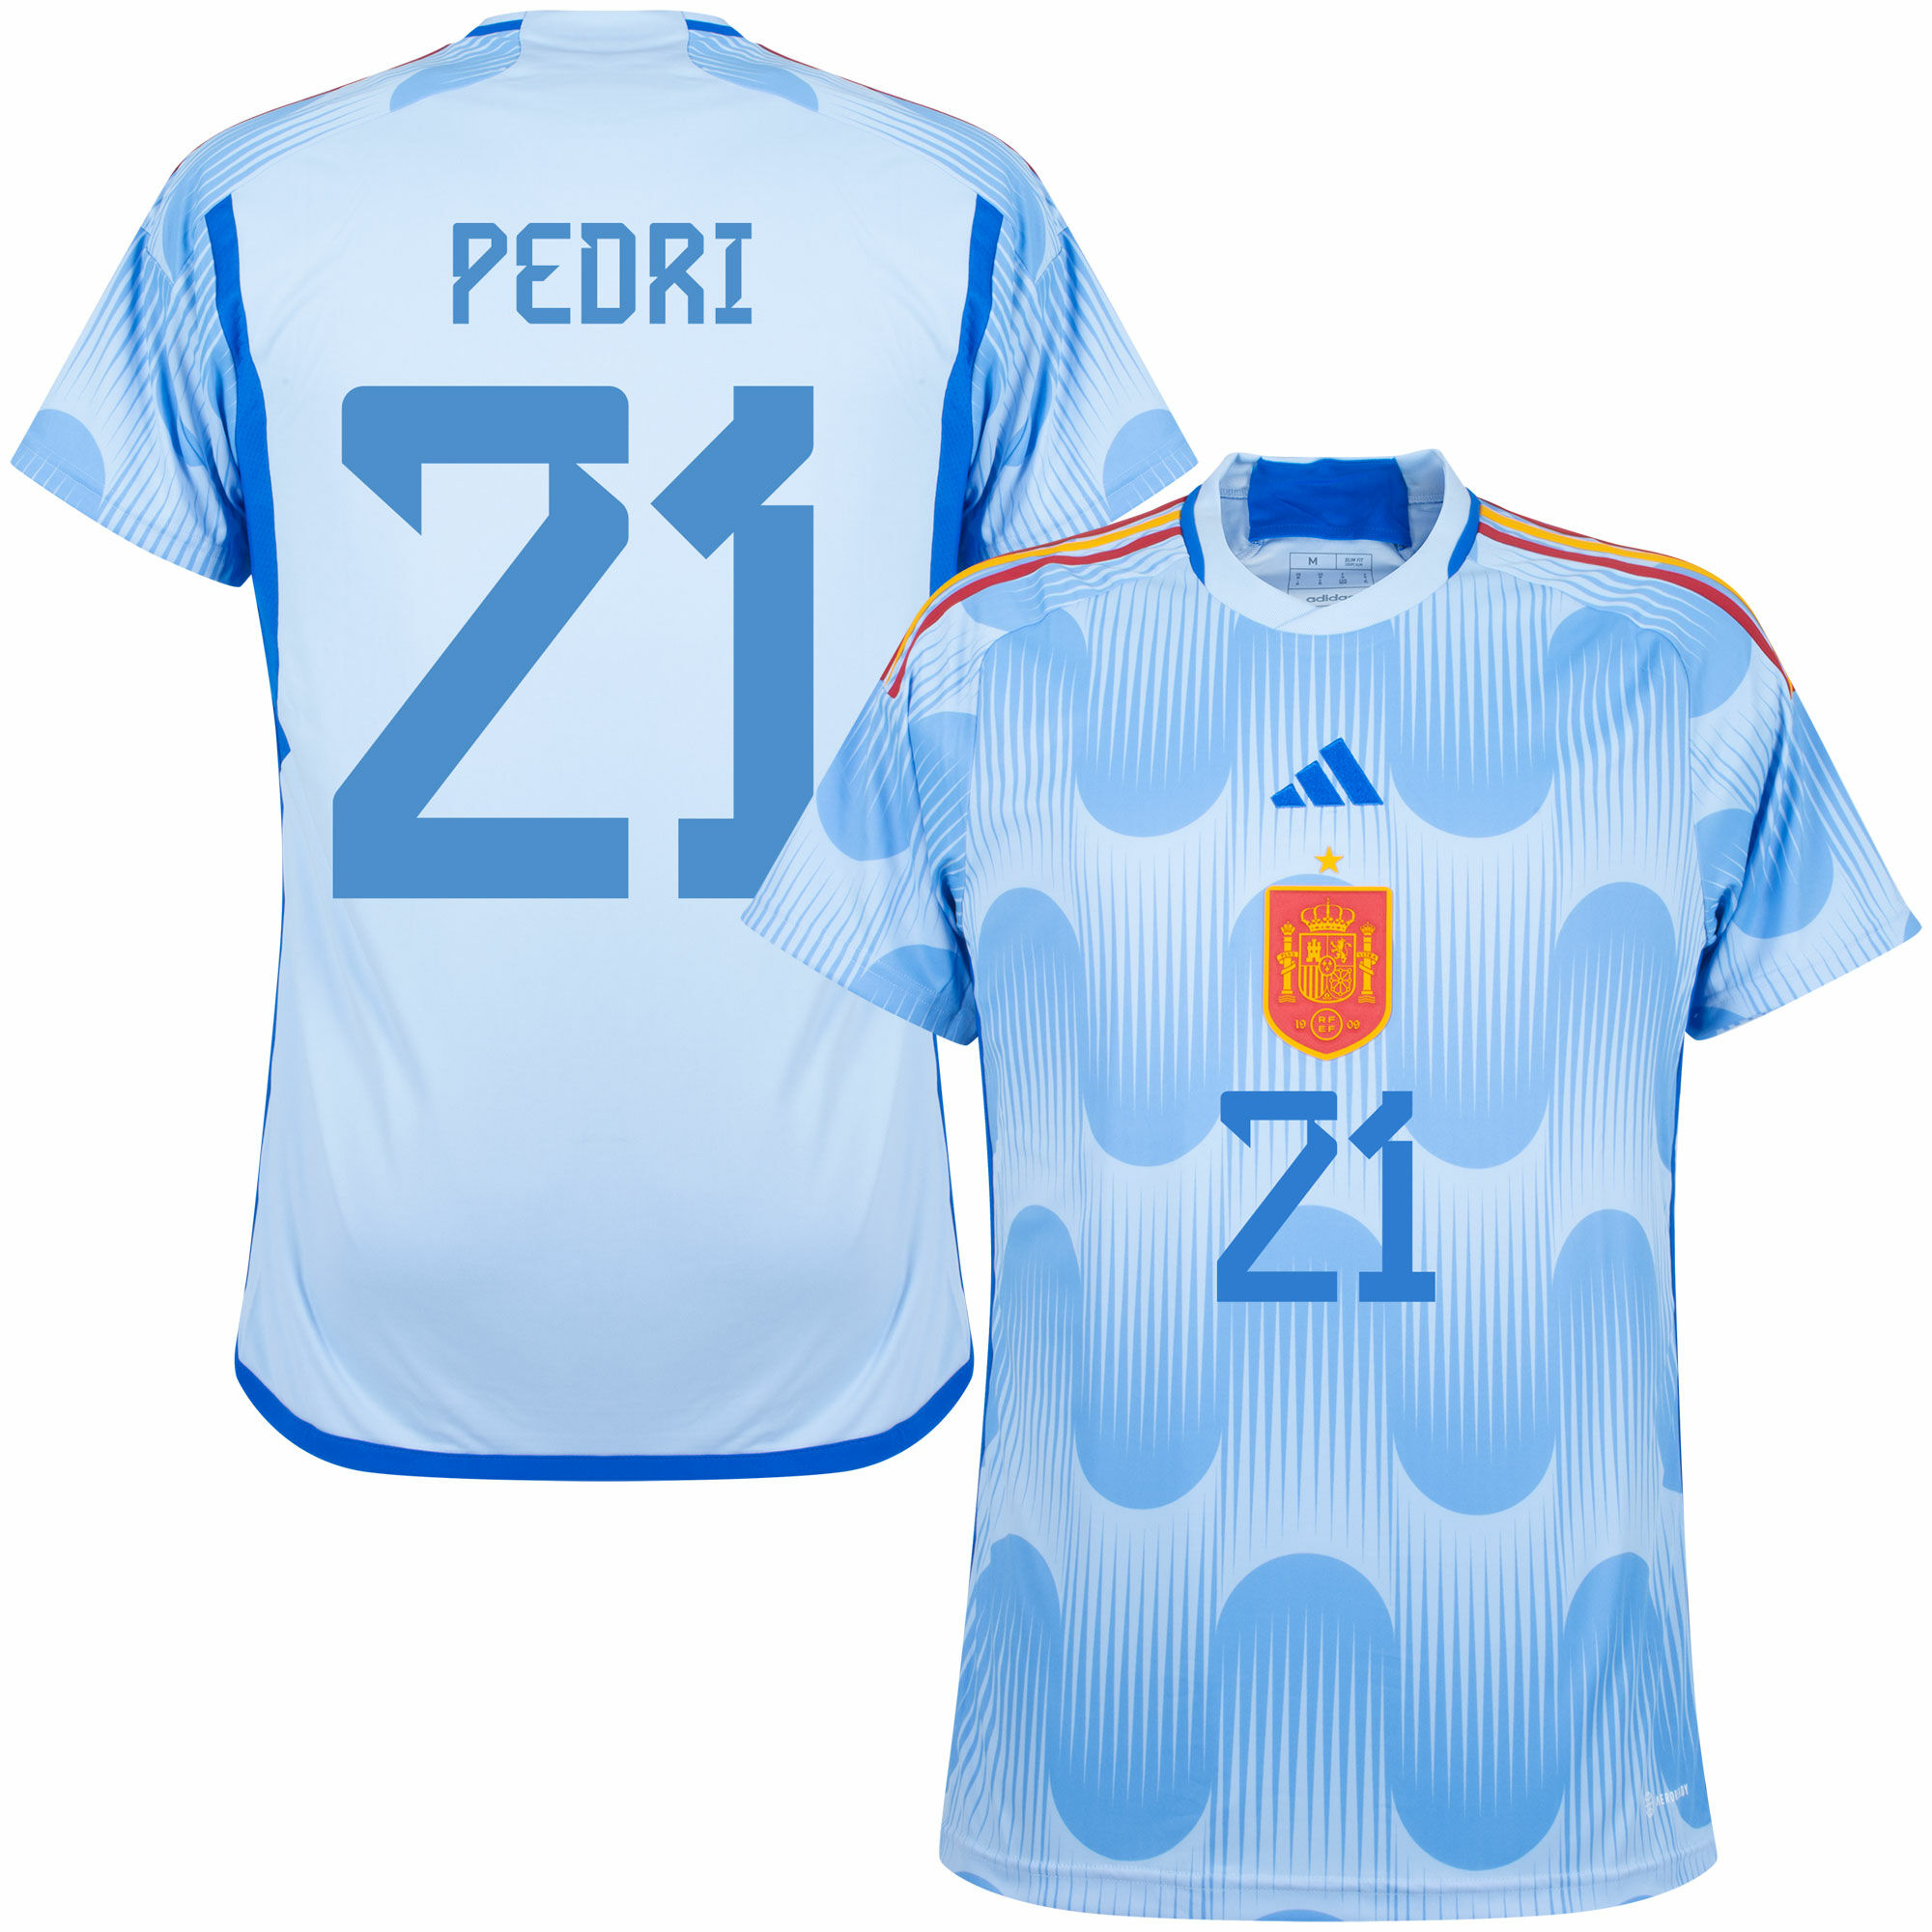 Španělsko - Dres fotbalový dětský - Pedri, fan potisk, číslo 21, sezóna 2022/23, modrý, venkovní